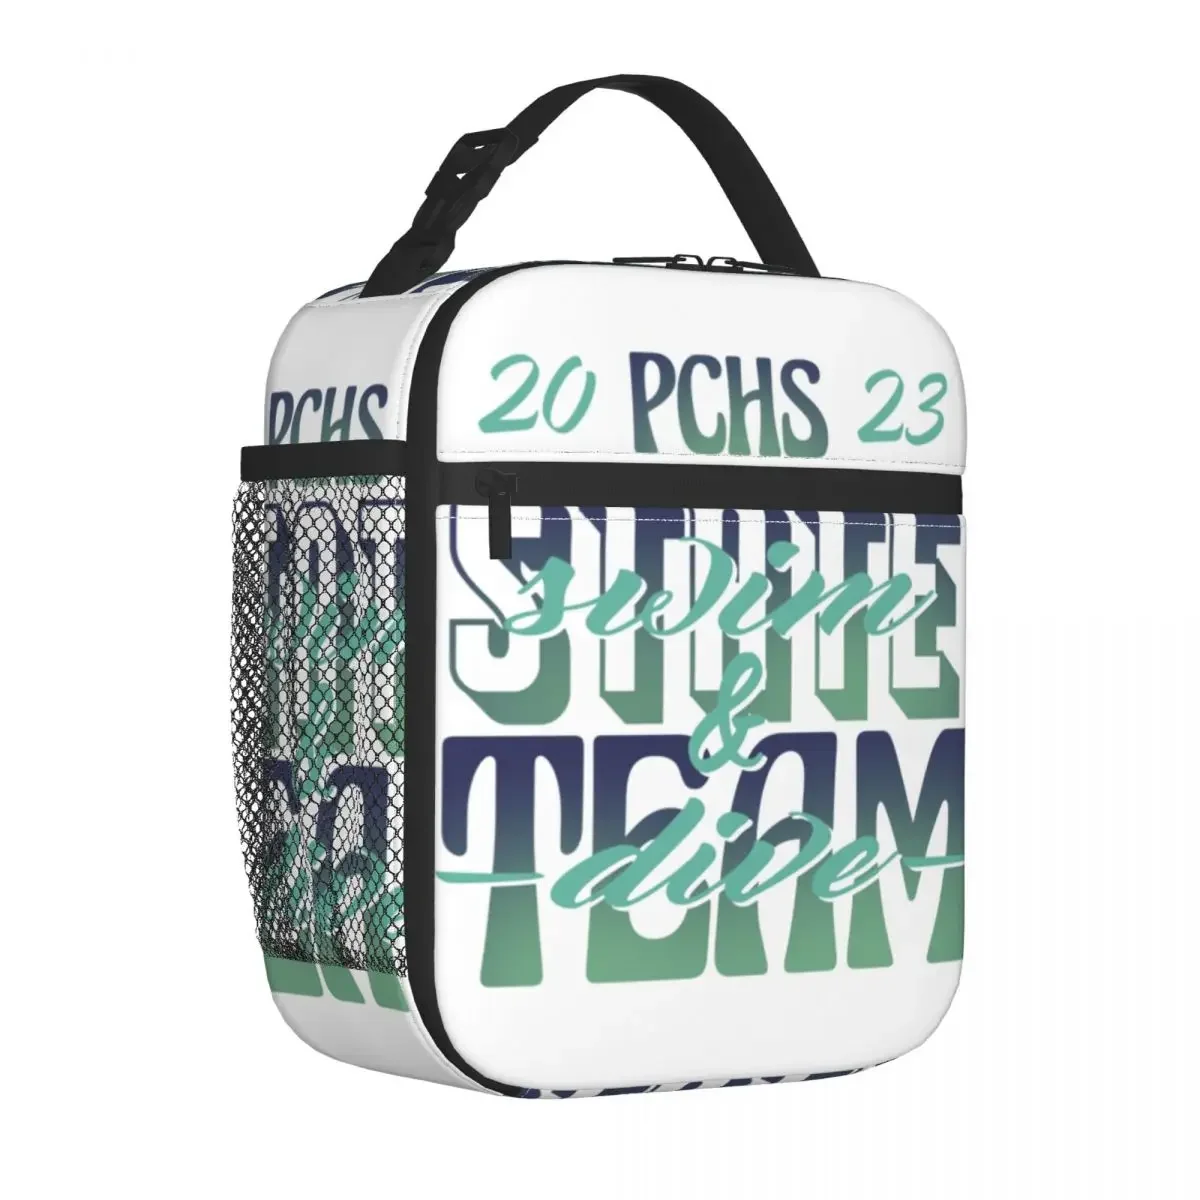 PCHS 2023 State Team Merch, Изолированная сумка для ланча, уличная коробка для еды, многофункциональный модный термоохладитель для ланча